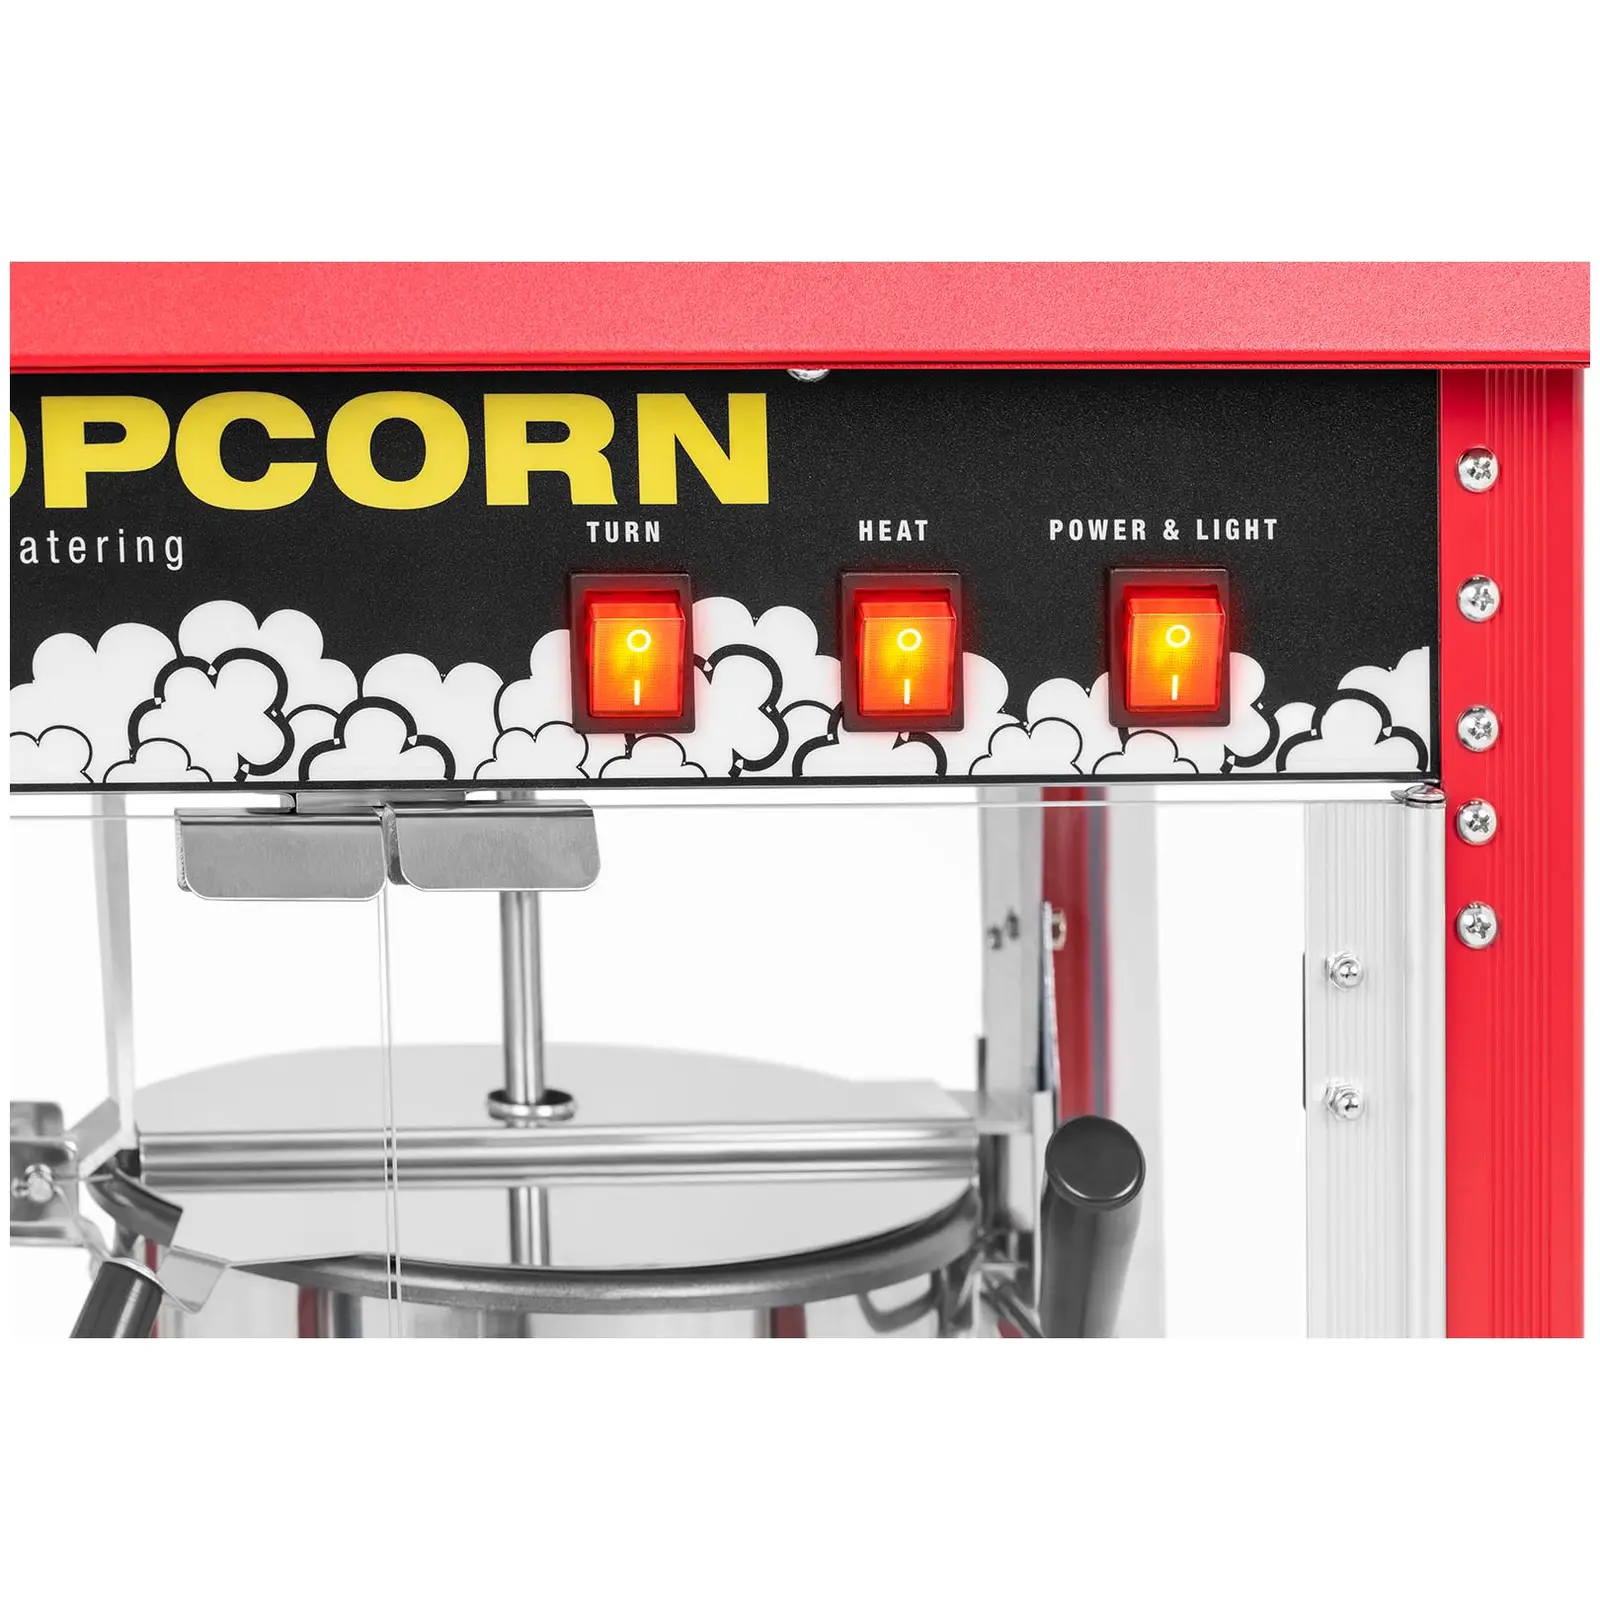 Macchina per popcorn piccola - Acciaio inossidabile rosso con vetro temperato e bollitore rivestito in teflon